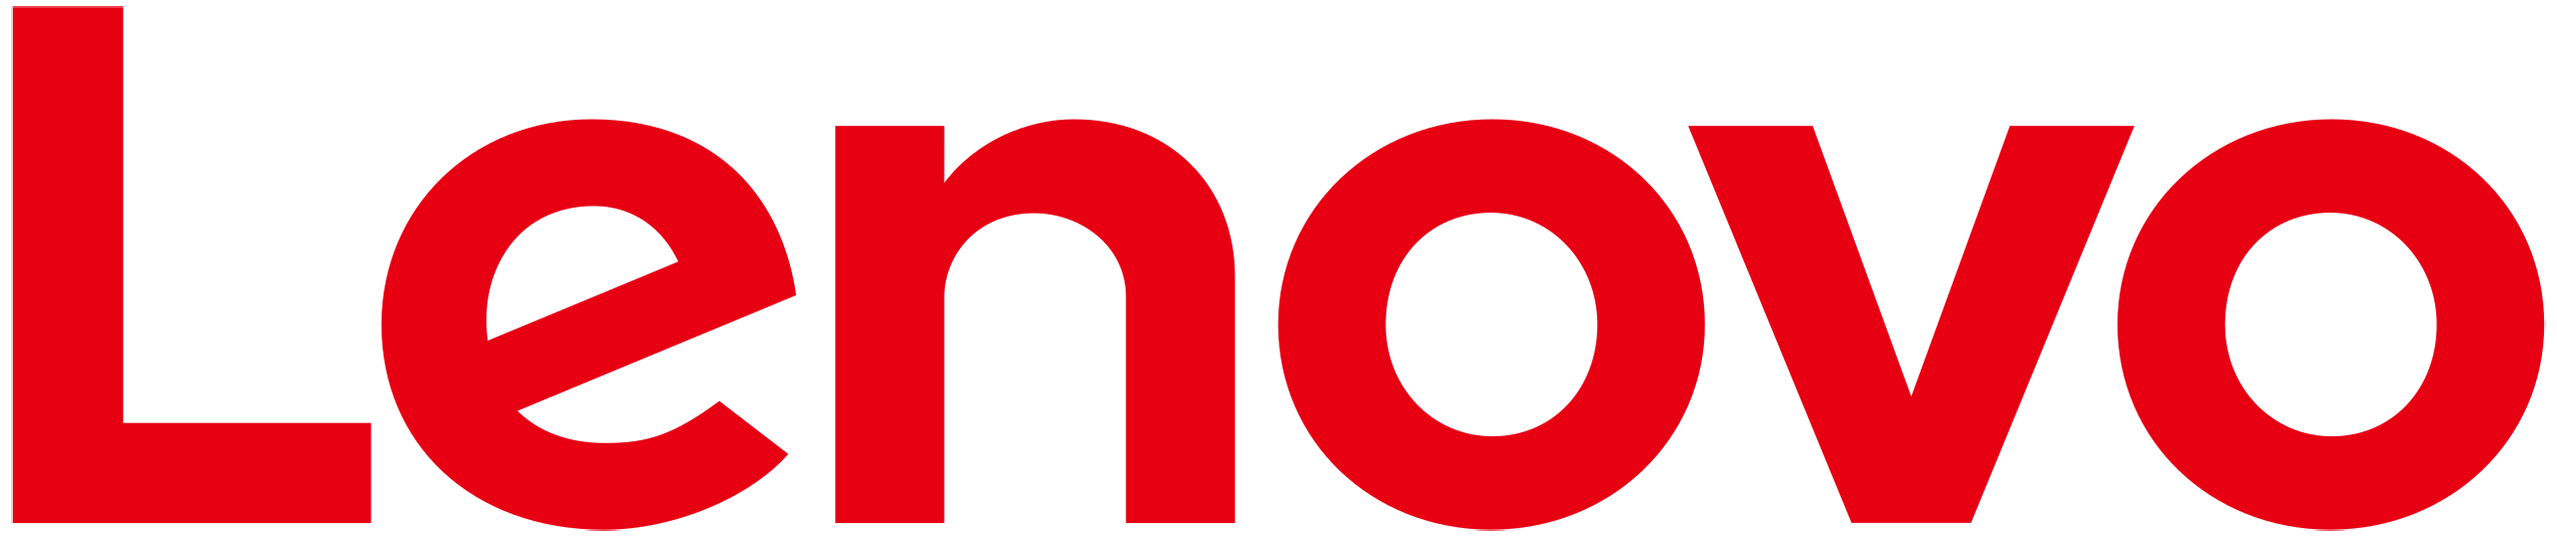 7 logo lenovo